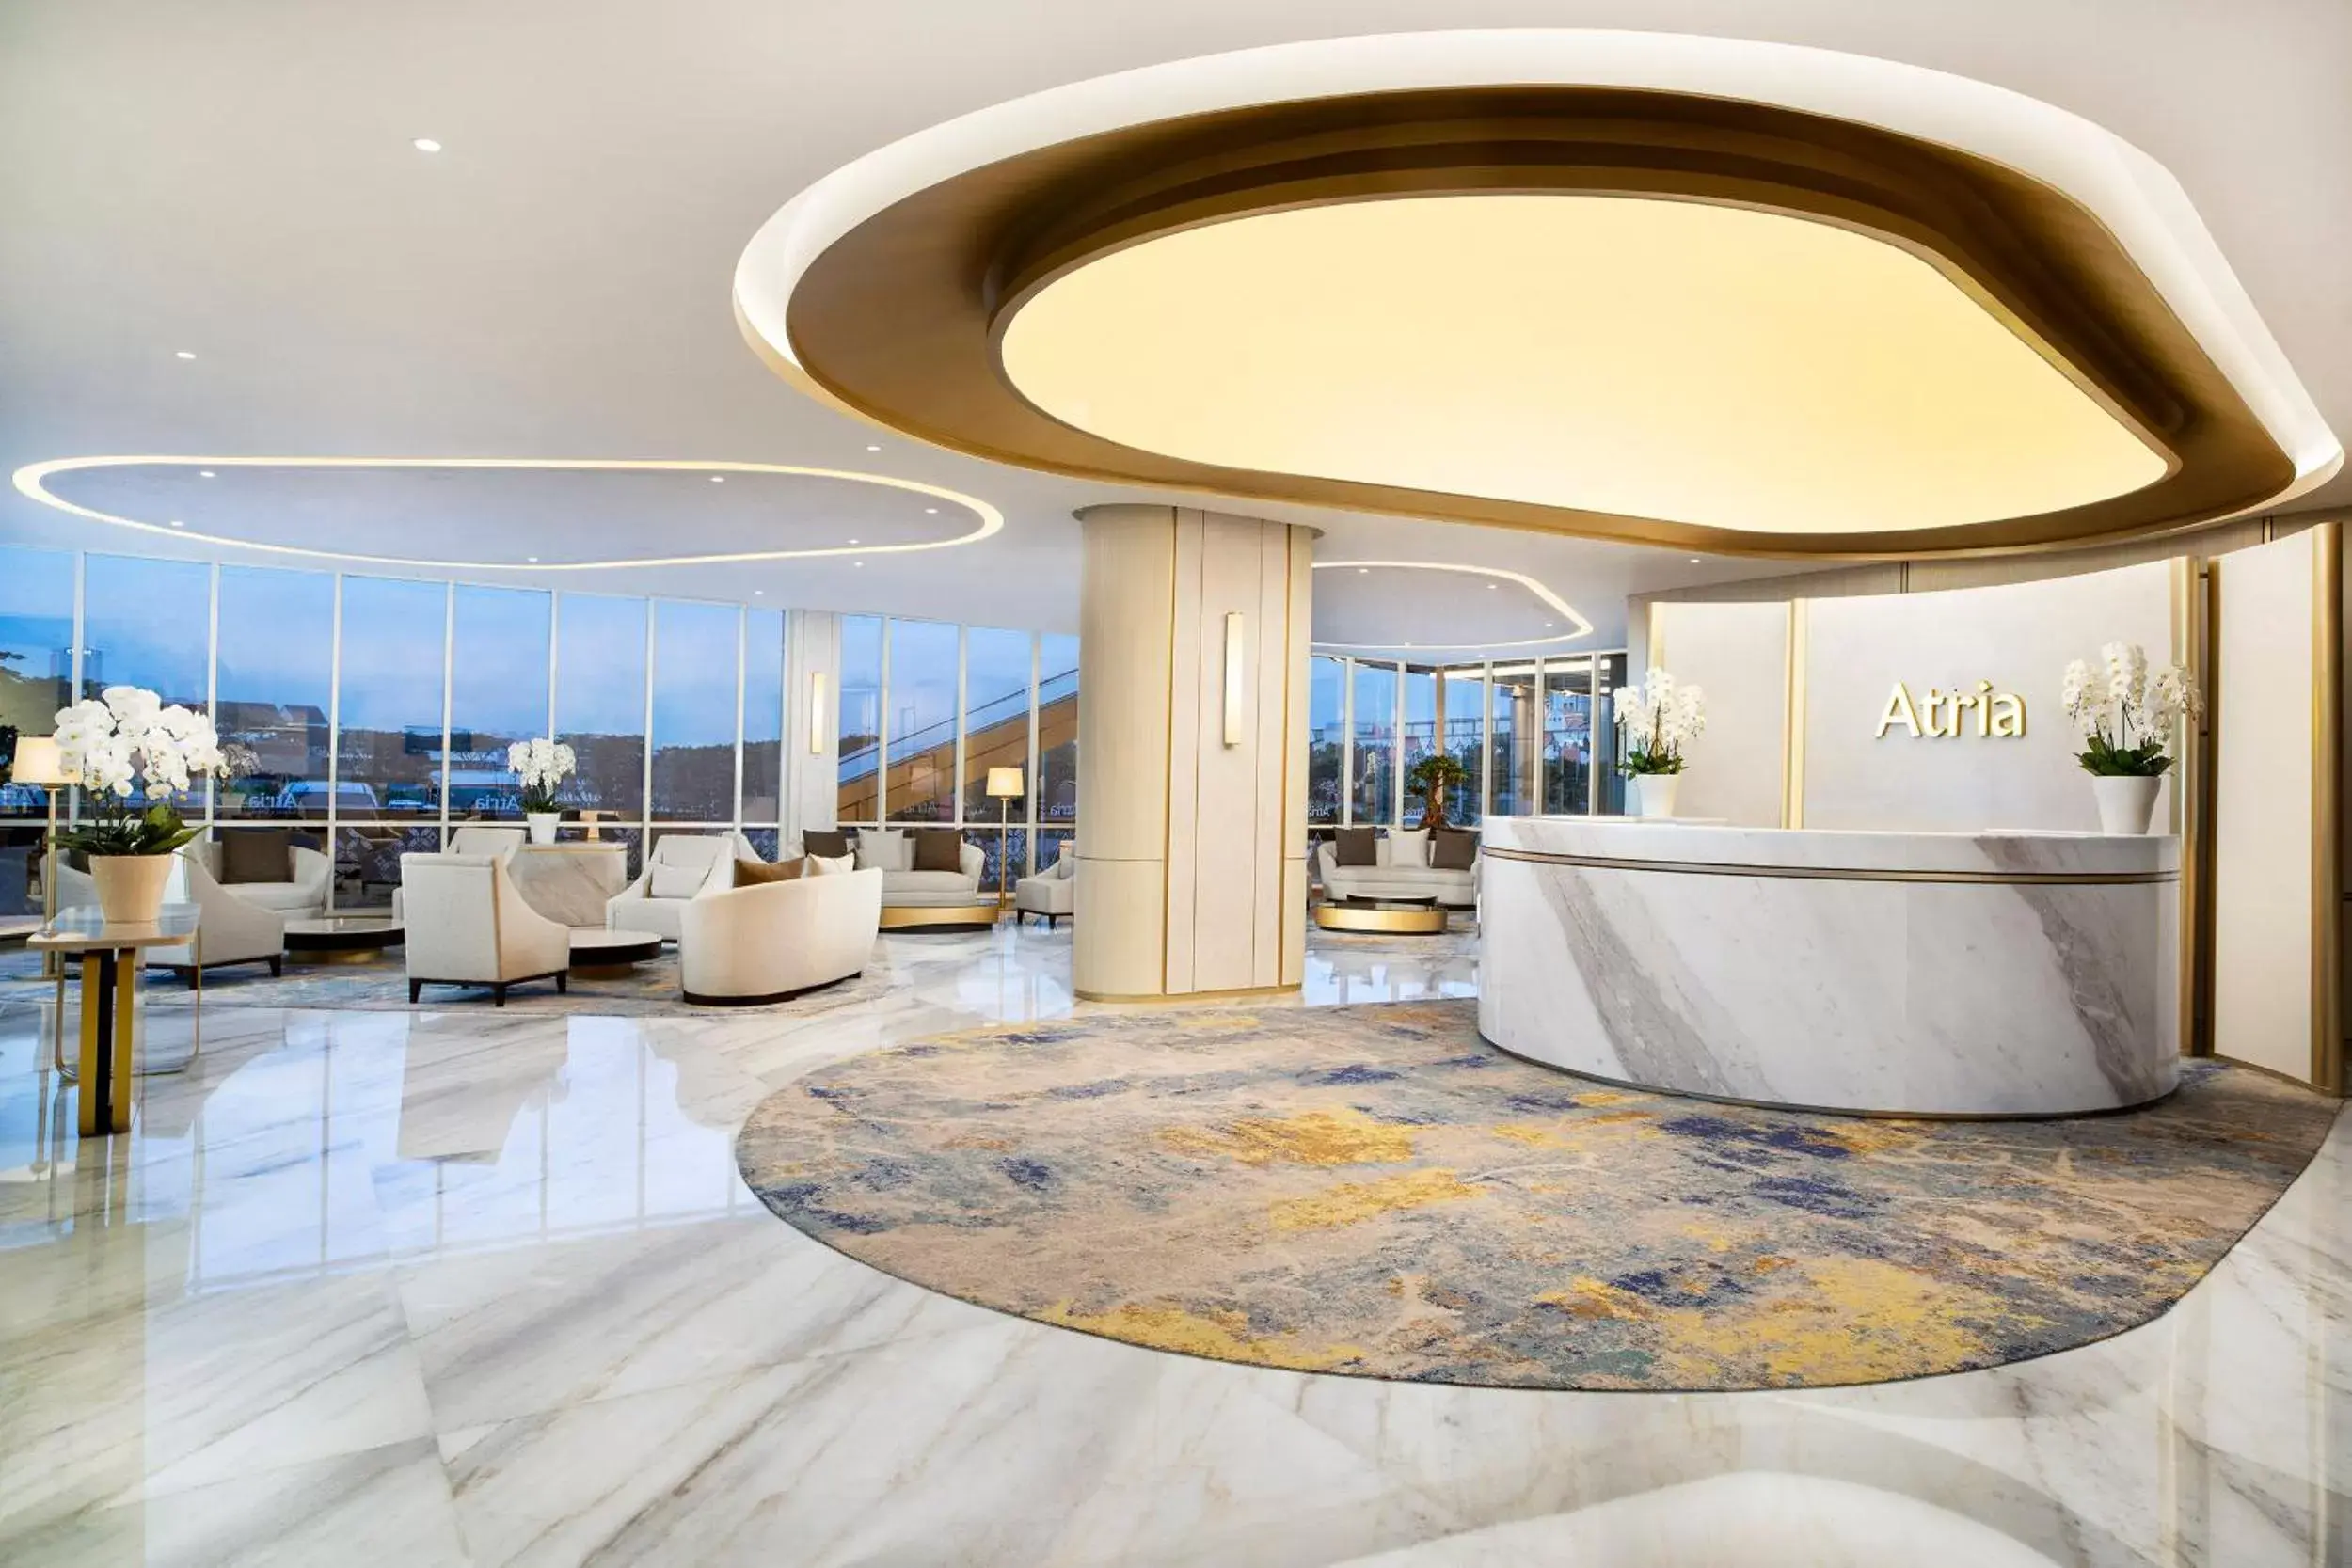 Lobby or reception, Lobby/Reception in Atria Hotel Gading Serpong